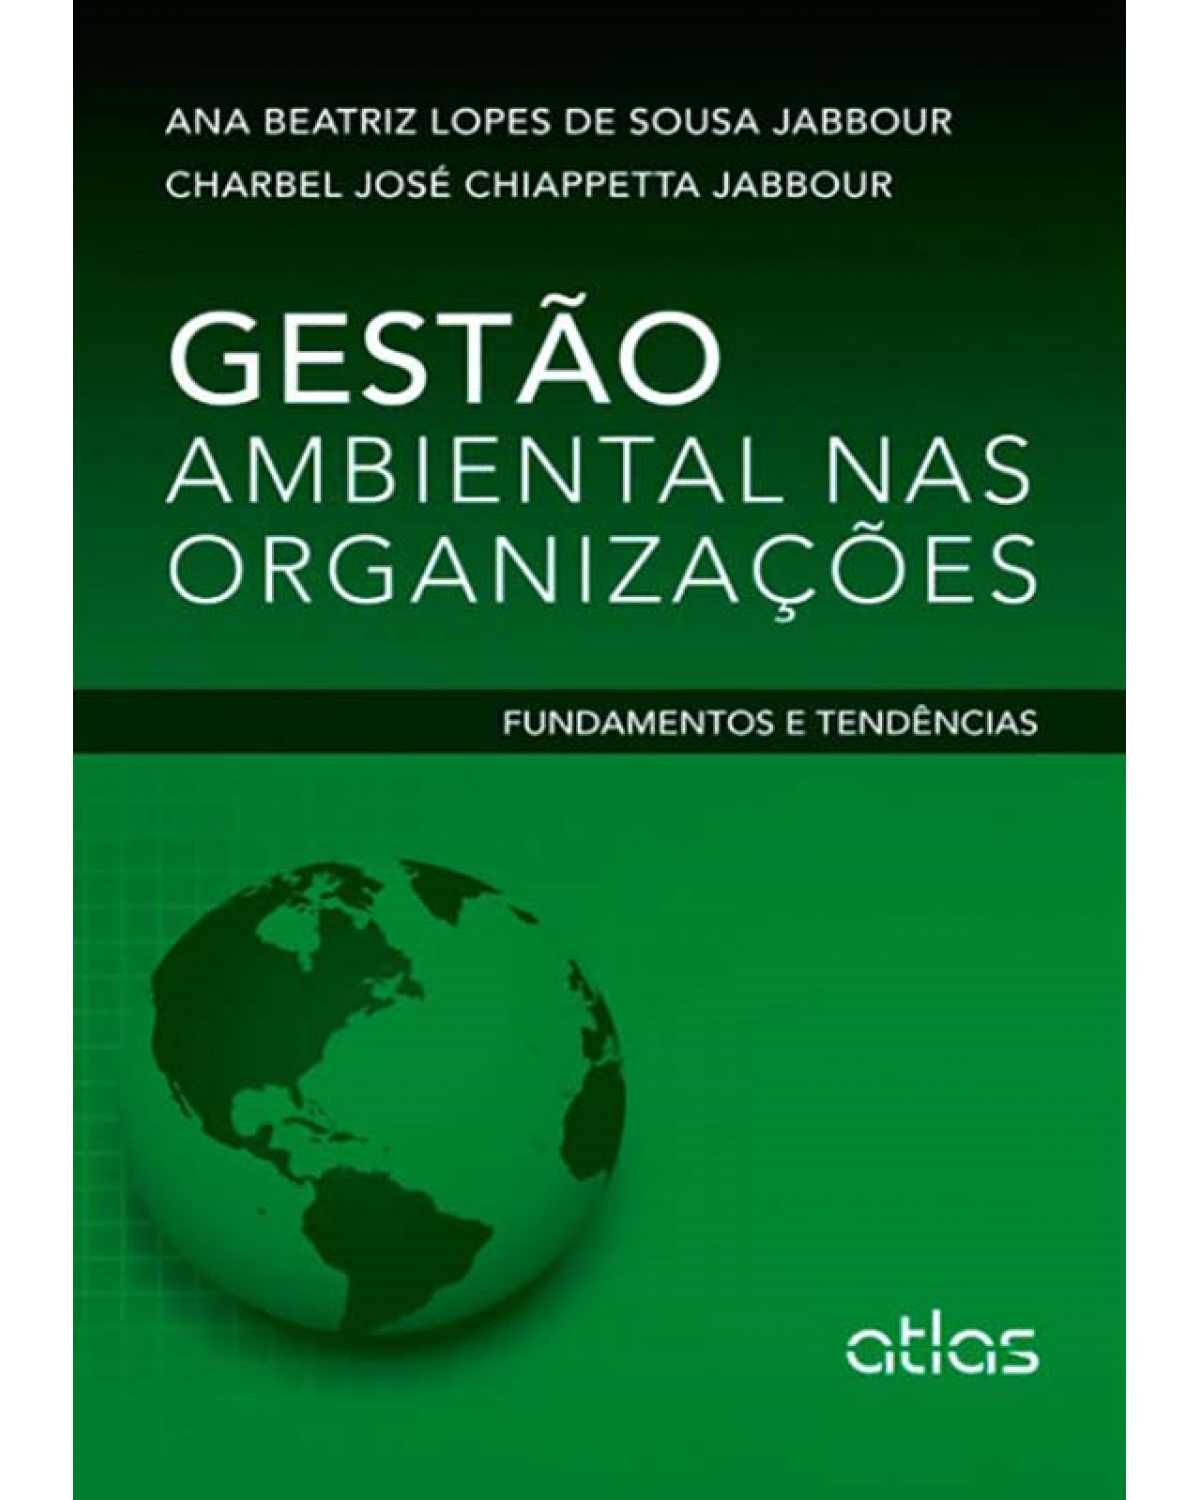 Gestão ambiental nas organizações - Fundamentos e tendências - 1ª Edição | 2013